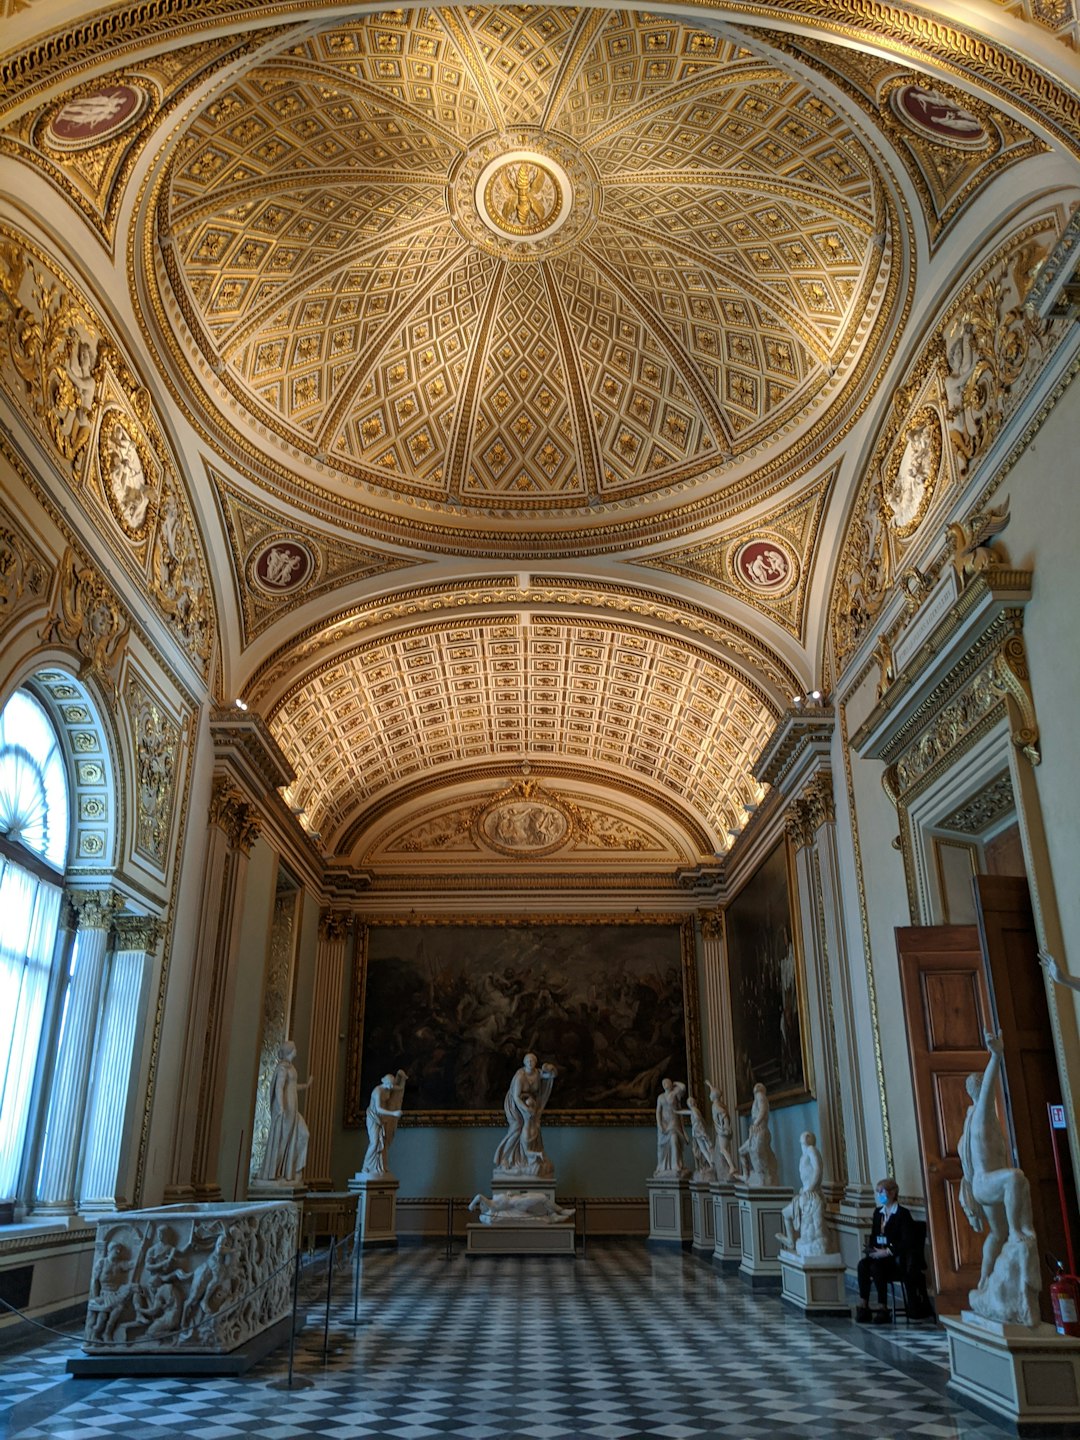 Basilica photo spot Uffizi Gallery Siena